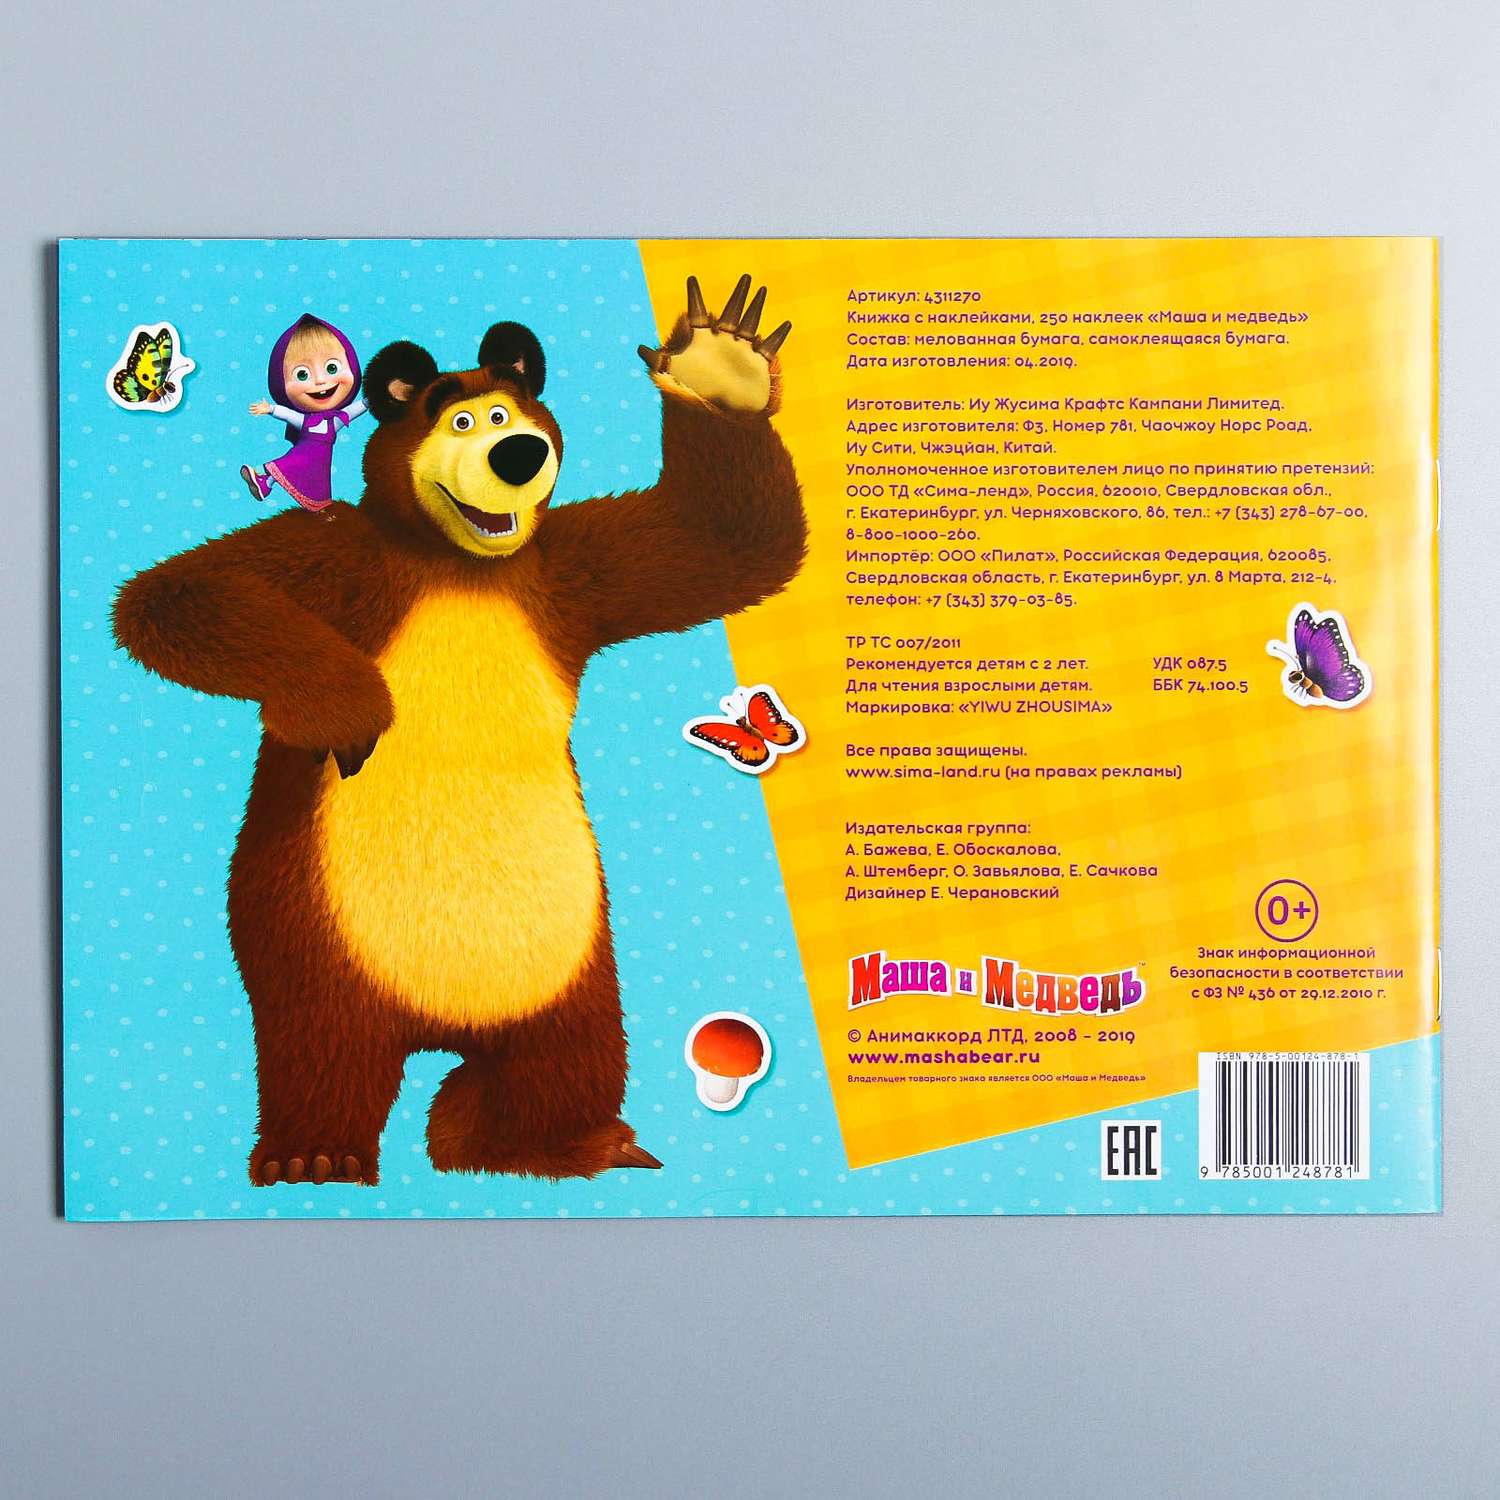 Альбом наклеек Маша и медведь 250 штук - фото 4